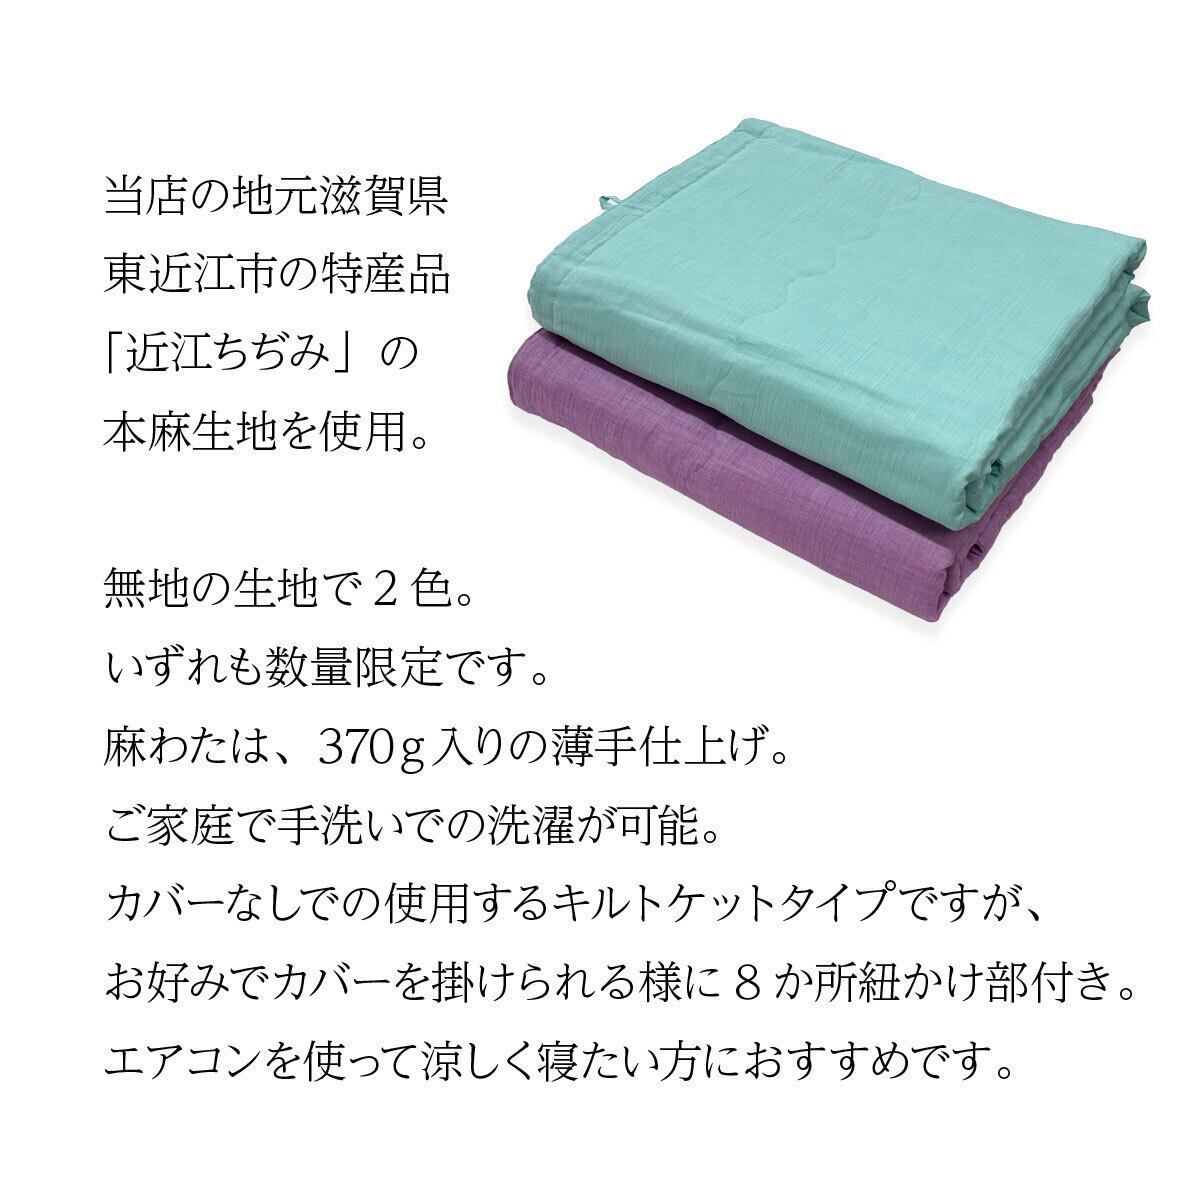 本麻クール掛けふとん 天然素材で涼しい夏掛け布団・キルトケット 日本